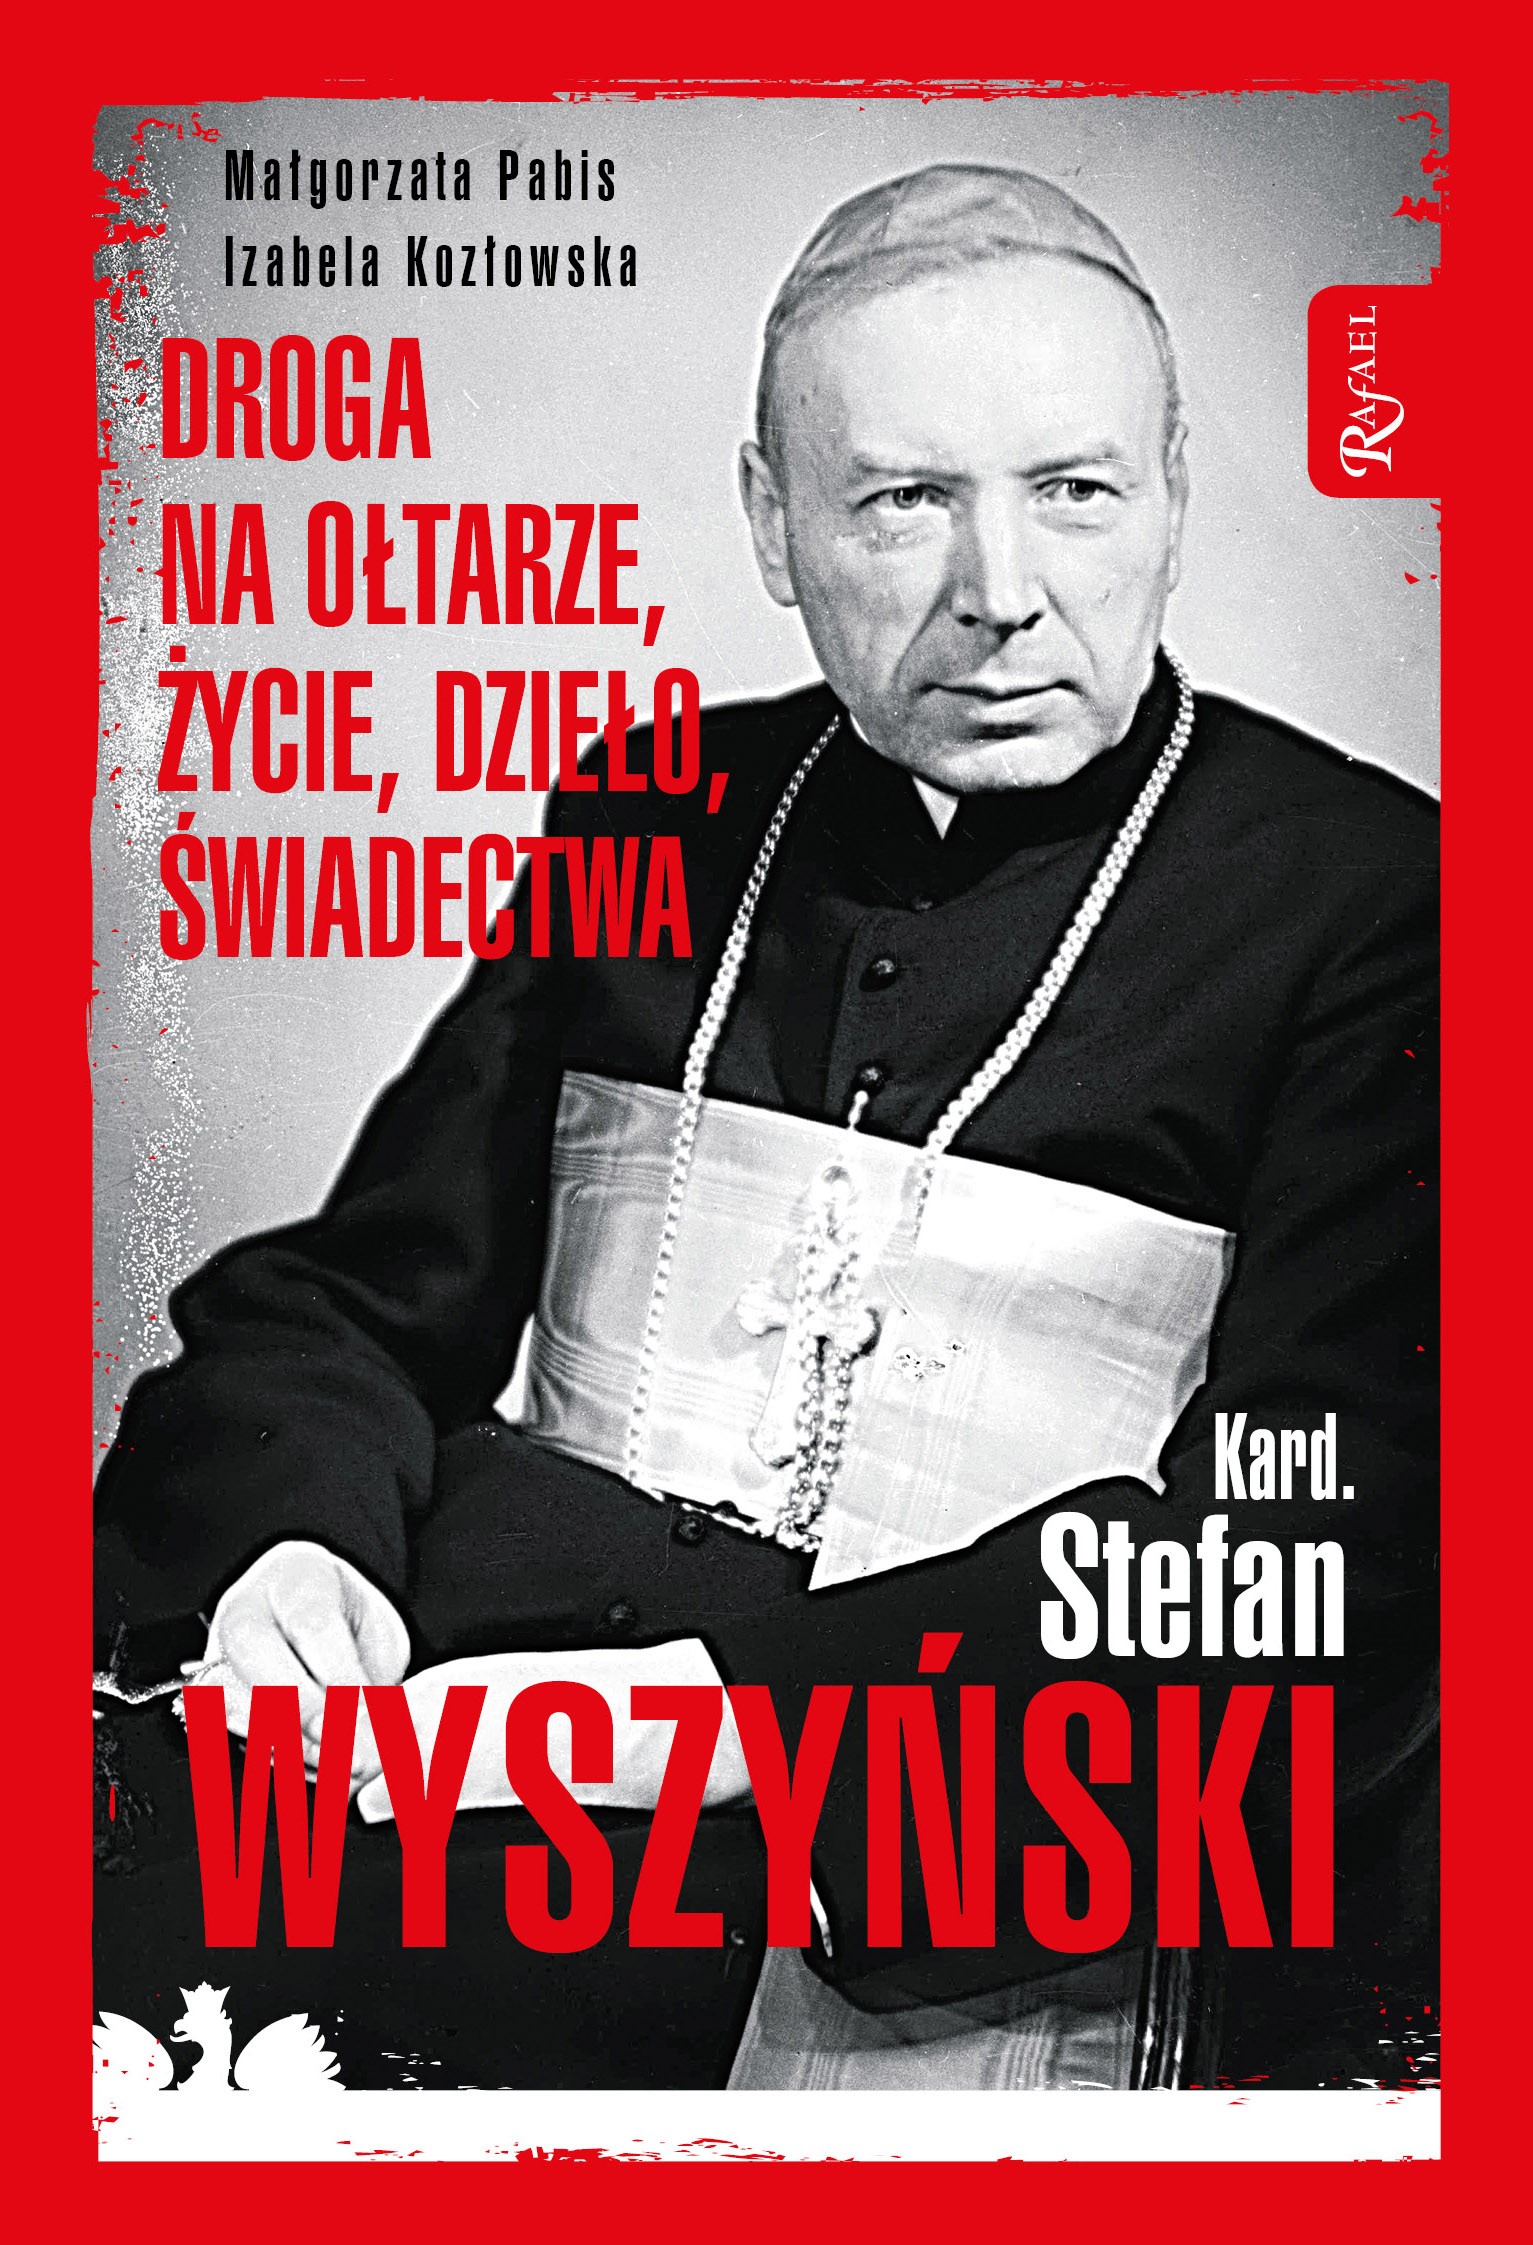 Okładka:Kard. Stefan Wyszyński. Droga na ołtarze, życie, dzieło, świadectwa 